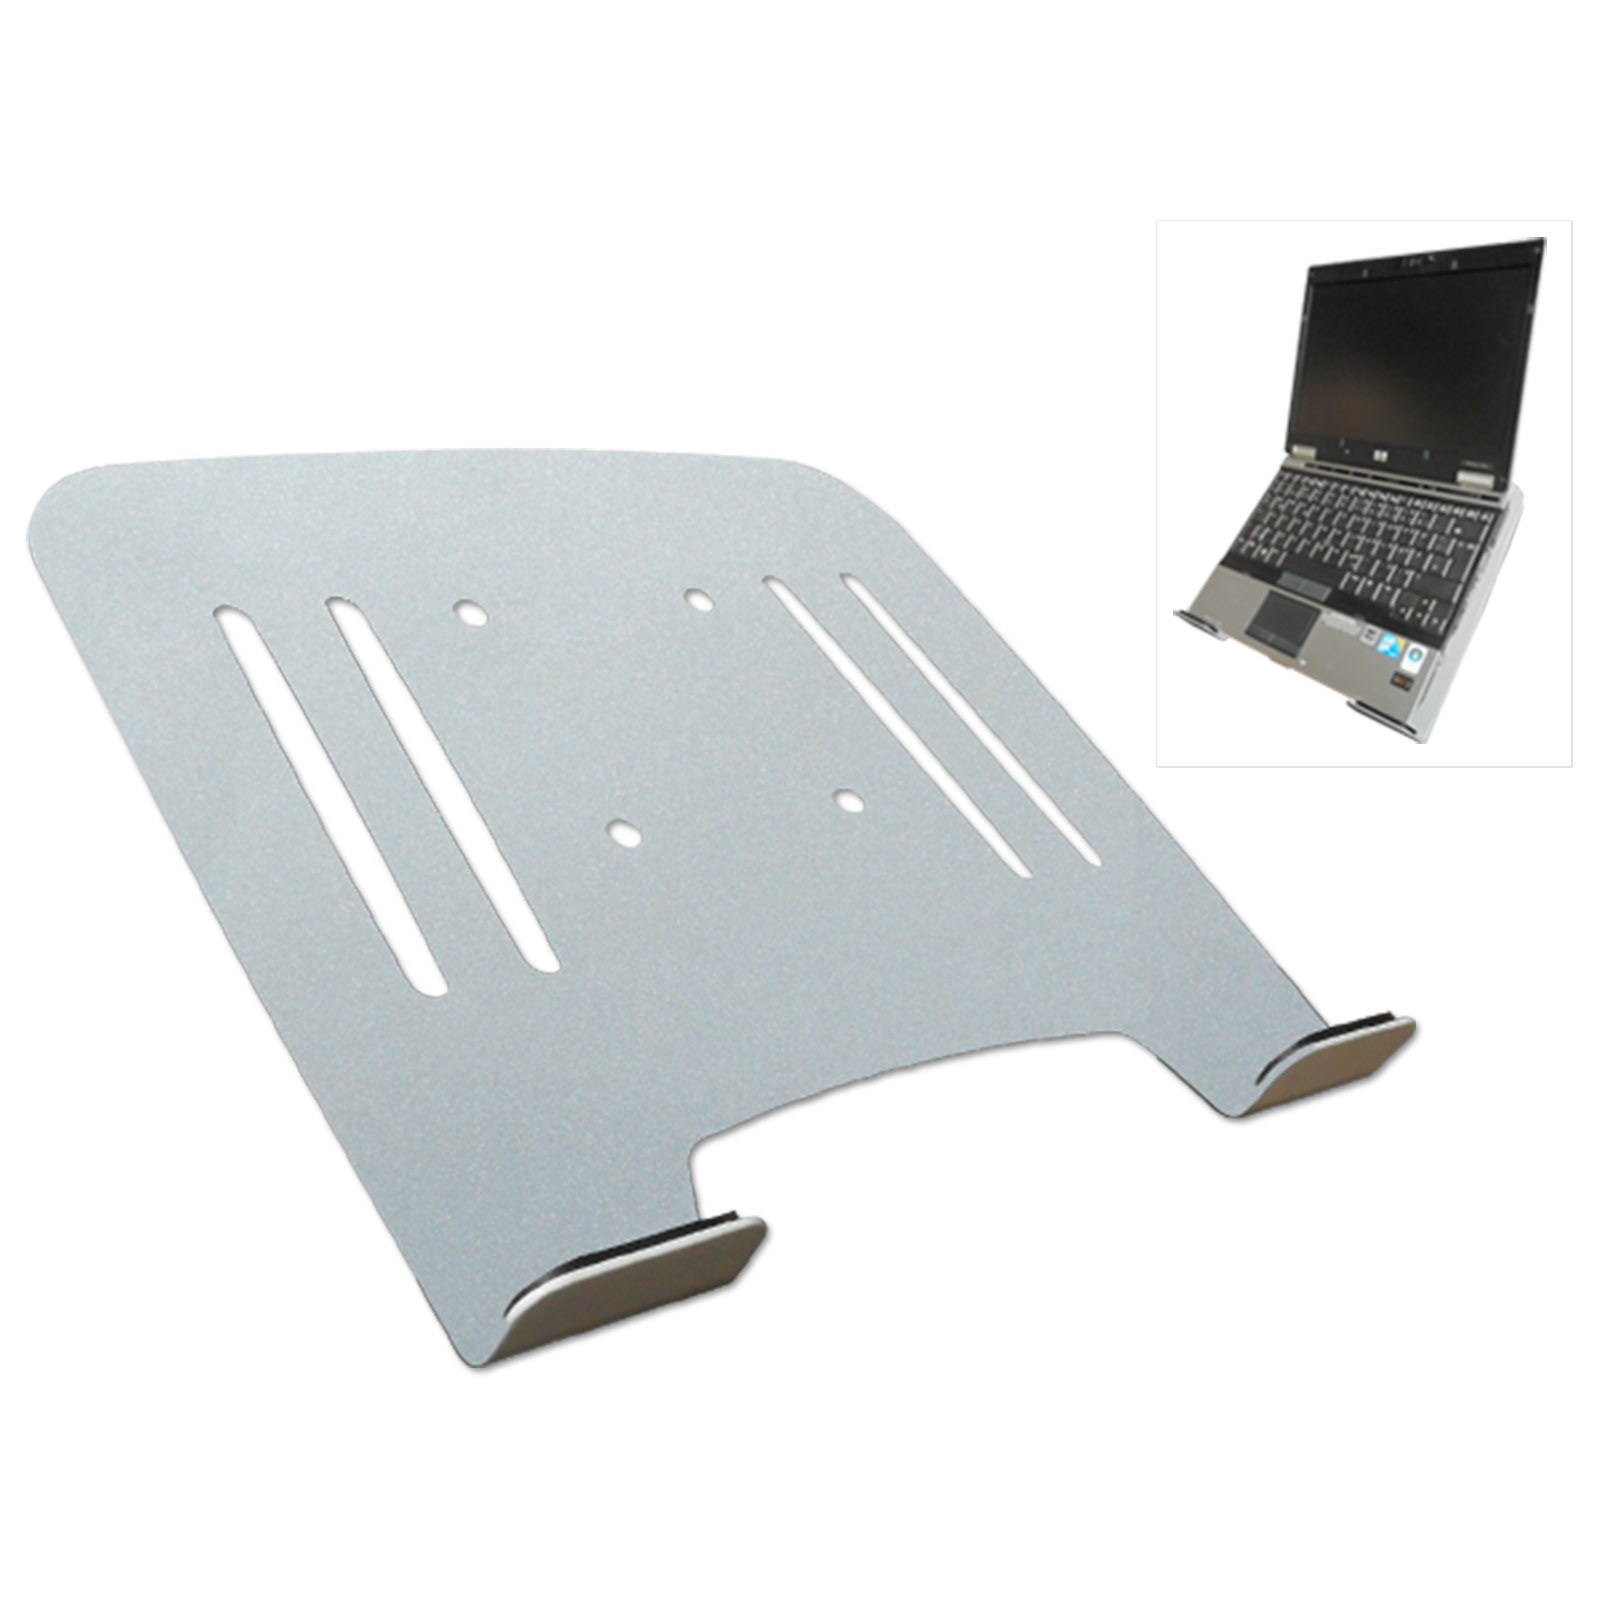 Wandhalterung Notebook silber Laptop Halterung L52S-IP3S silber Ablage Adapterplatte Wandhalterung Modell: INSTRUMENTS mit DRALL